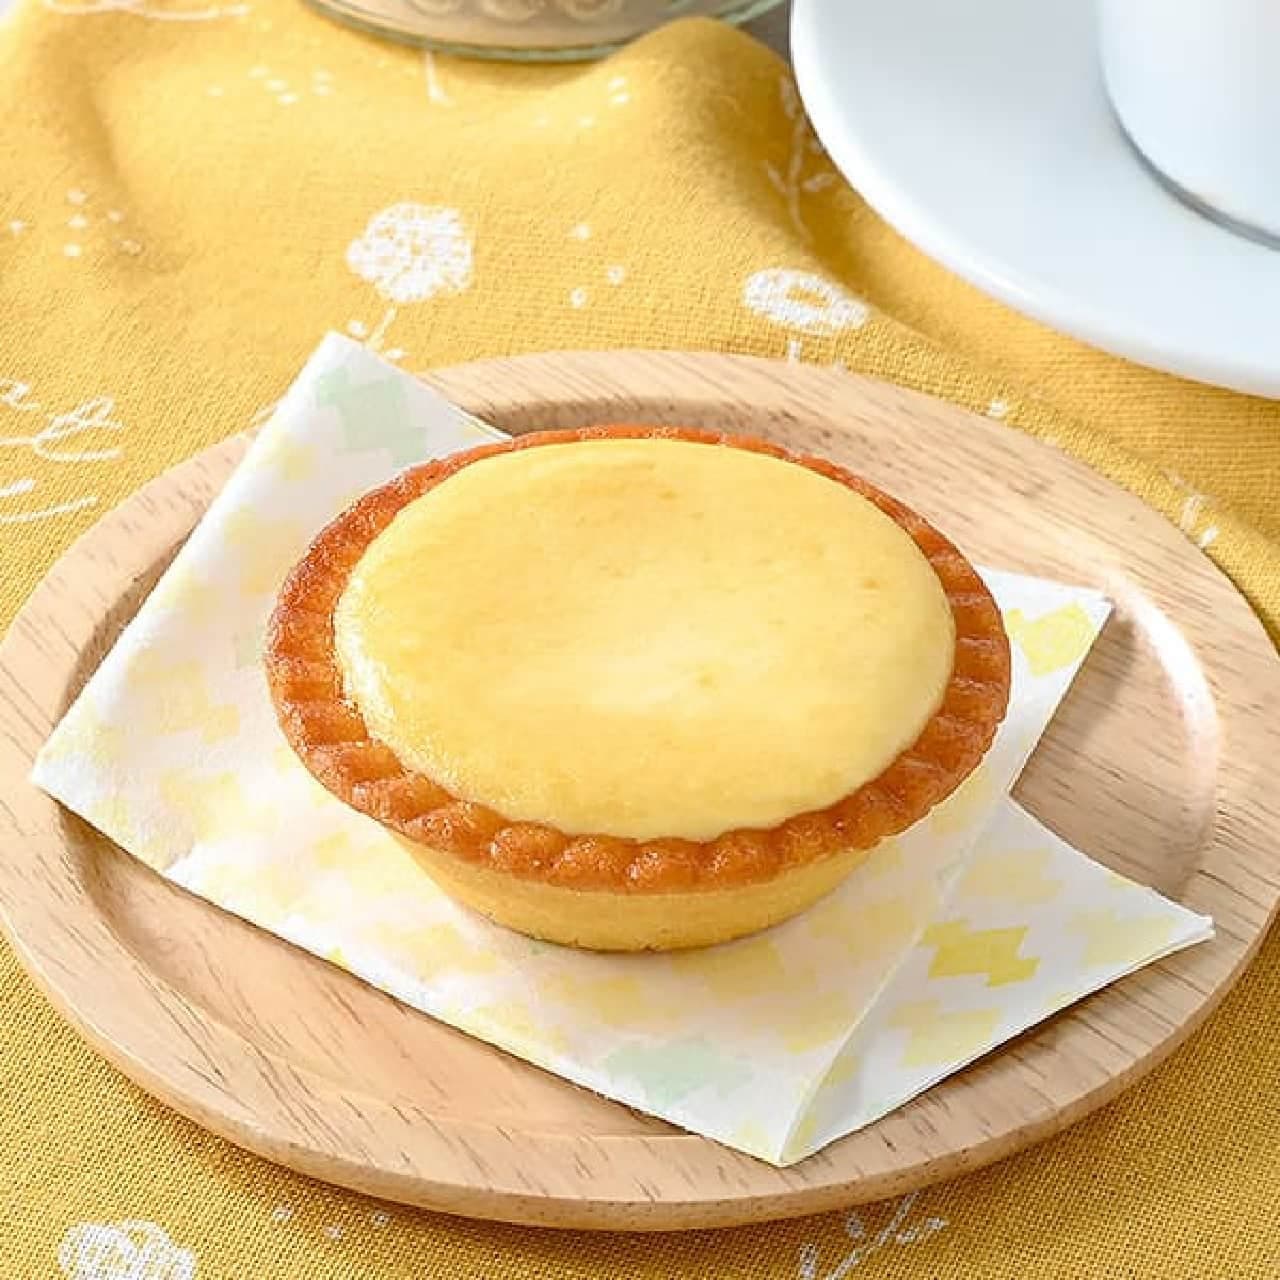 FamilyMart "Butter-scented baked cheese tart